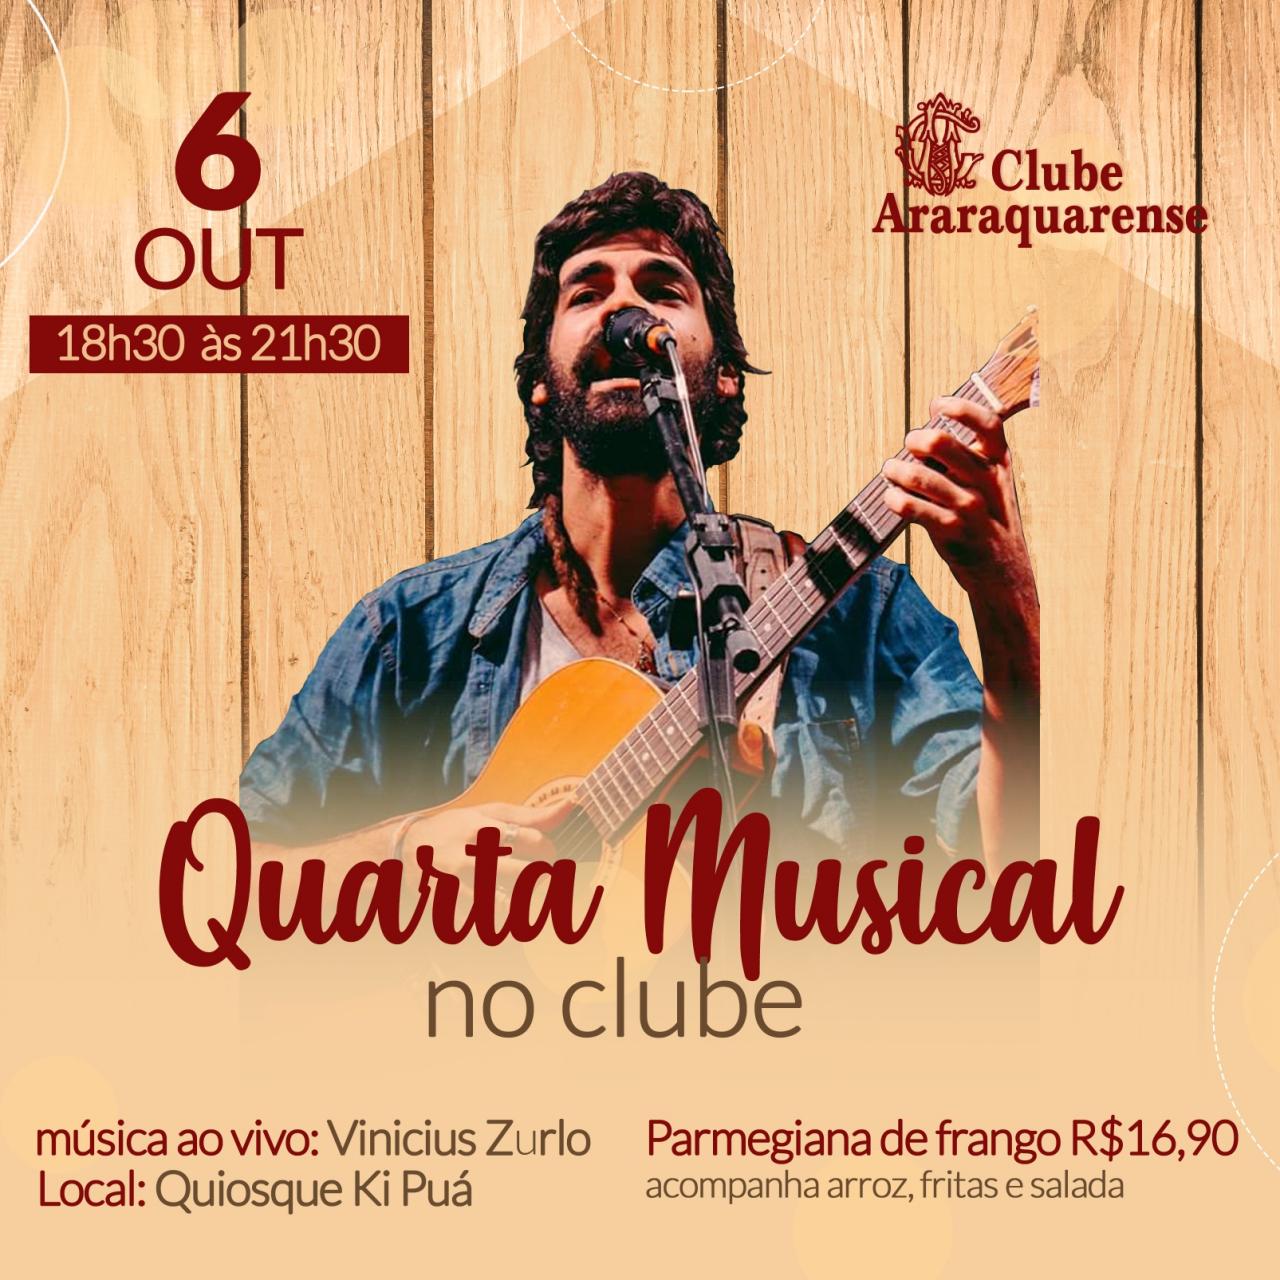 Nesta quarta-feira 06/10 tem Happy Hour do Clube Araraquarense com música ao vivo !